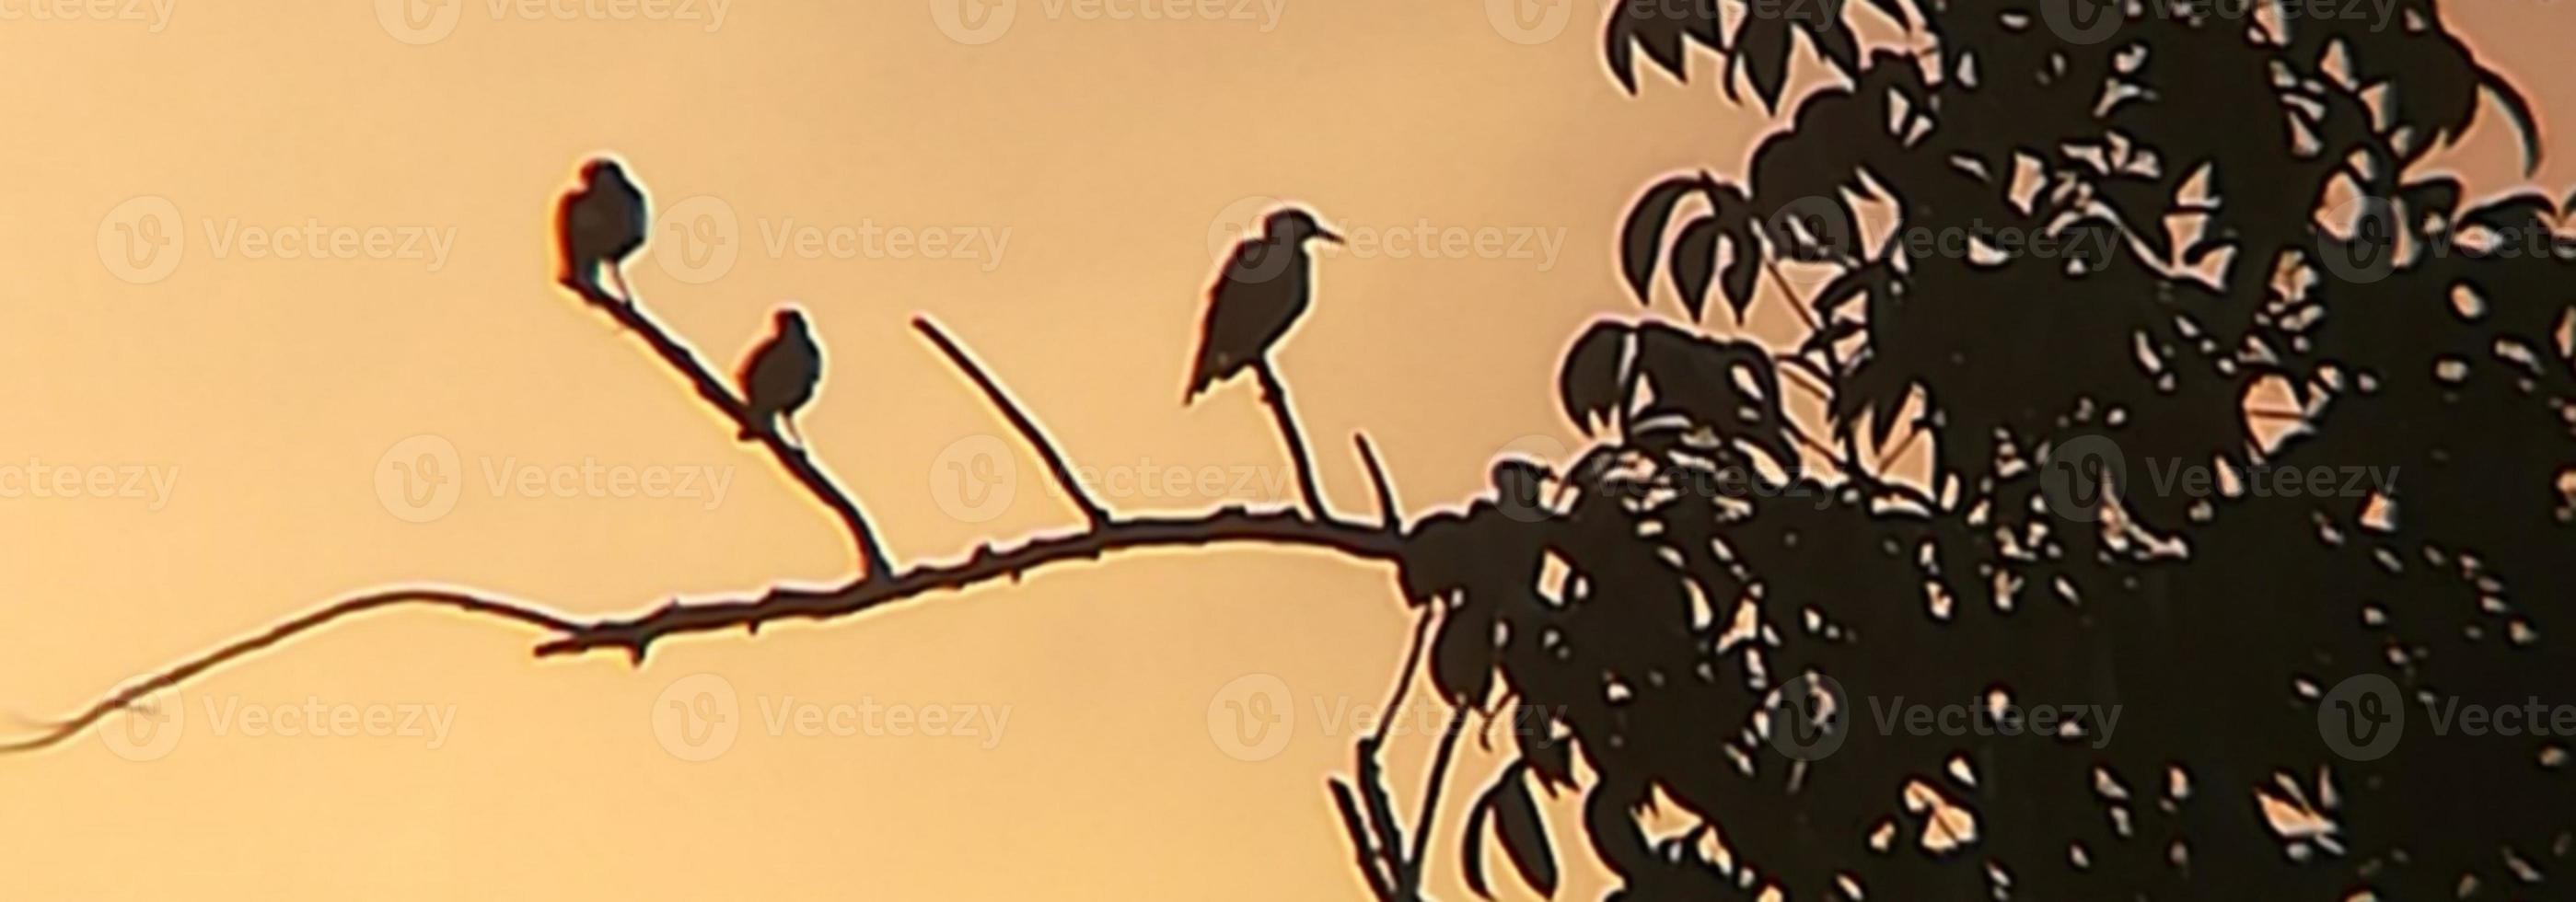 Vogelfoto mit schwarzem Baum foto